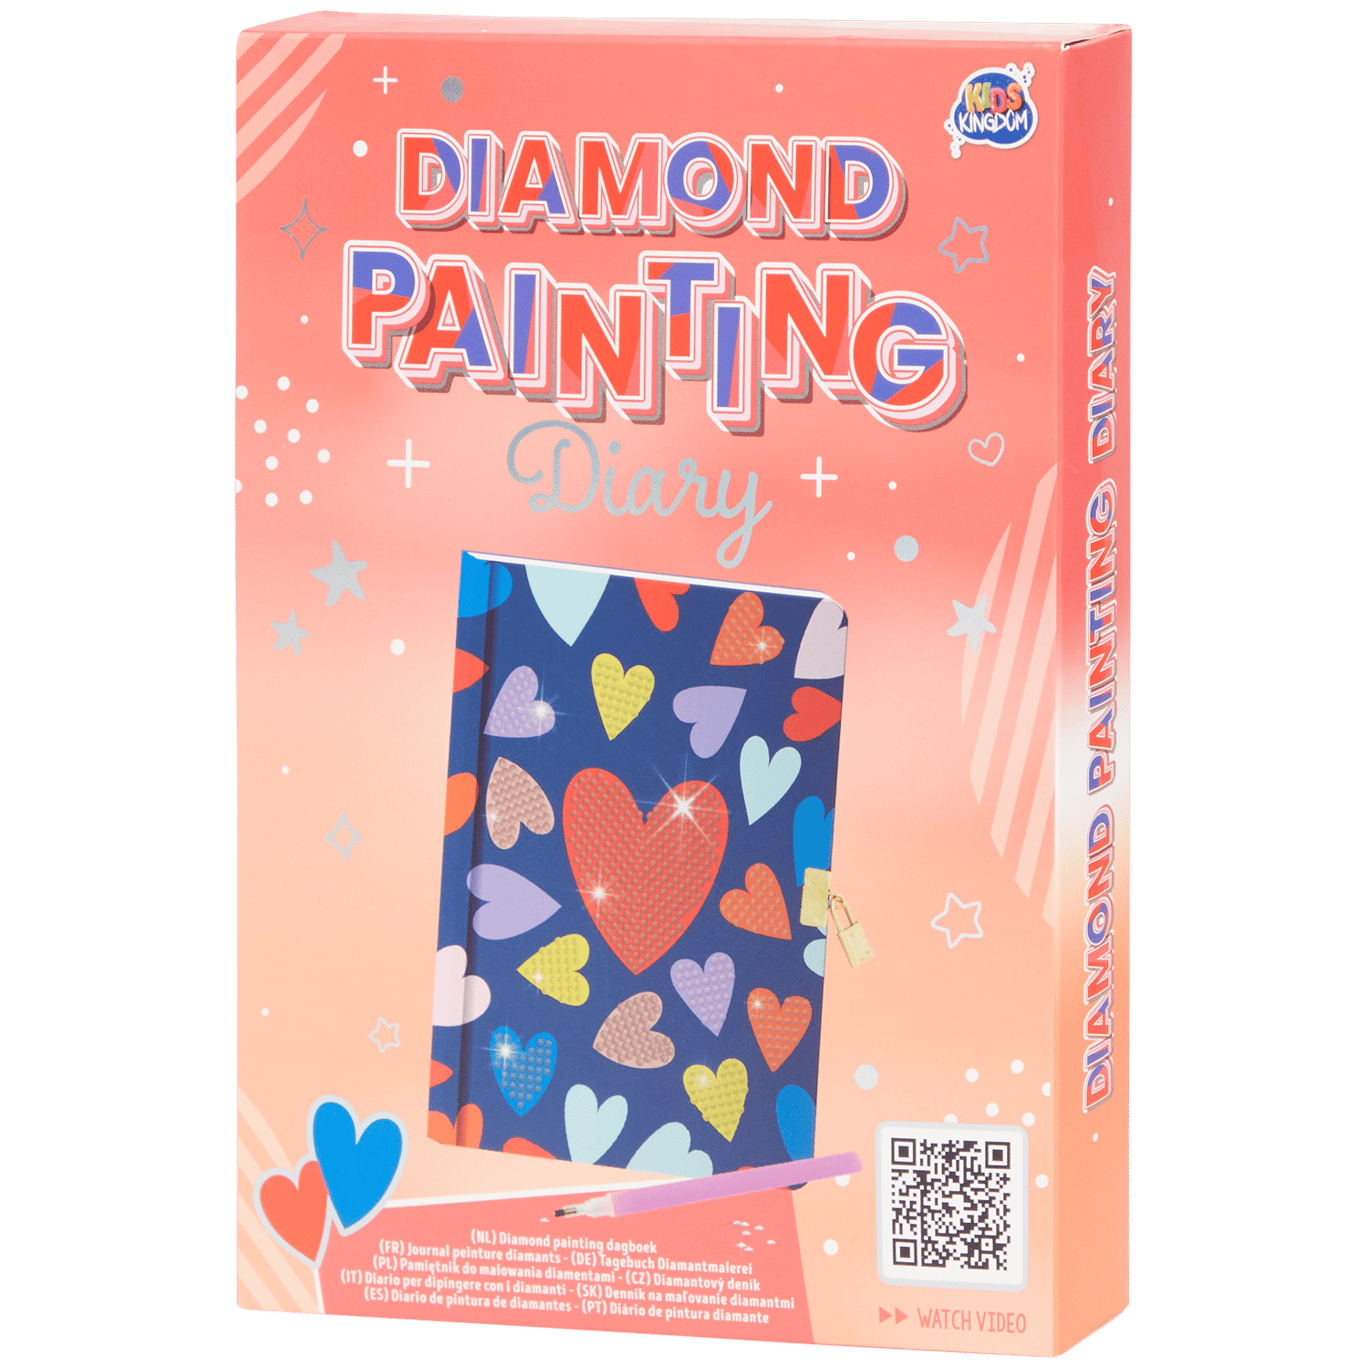 Deník – diamantové malování Kids Kingdom